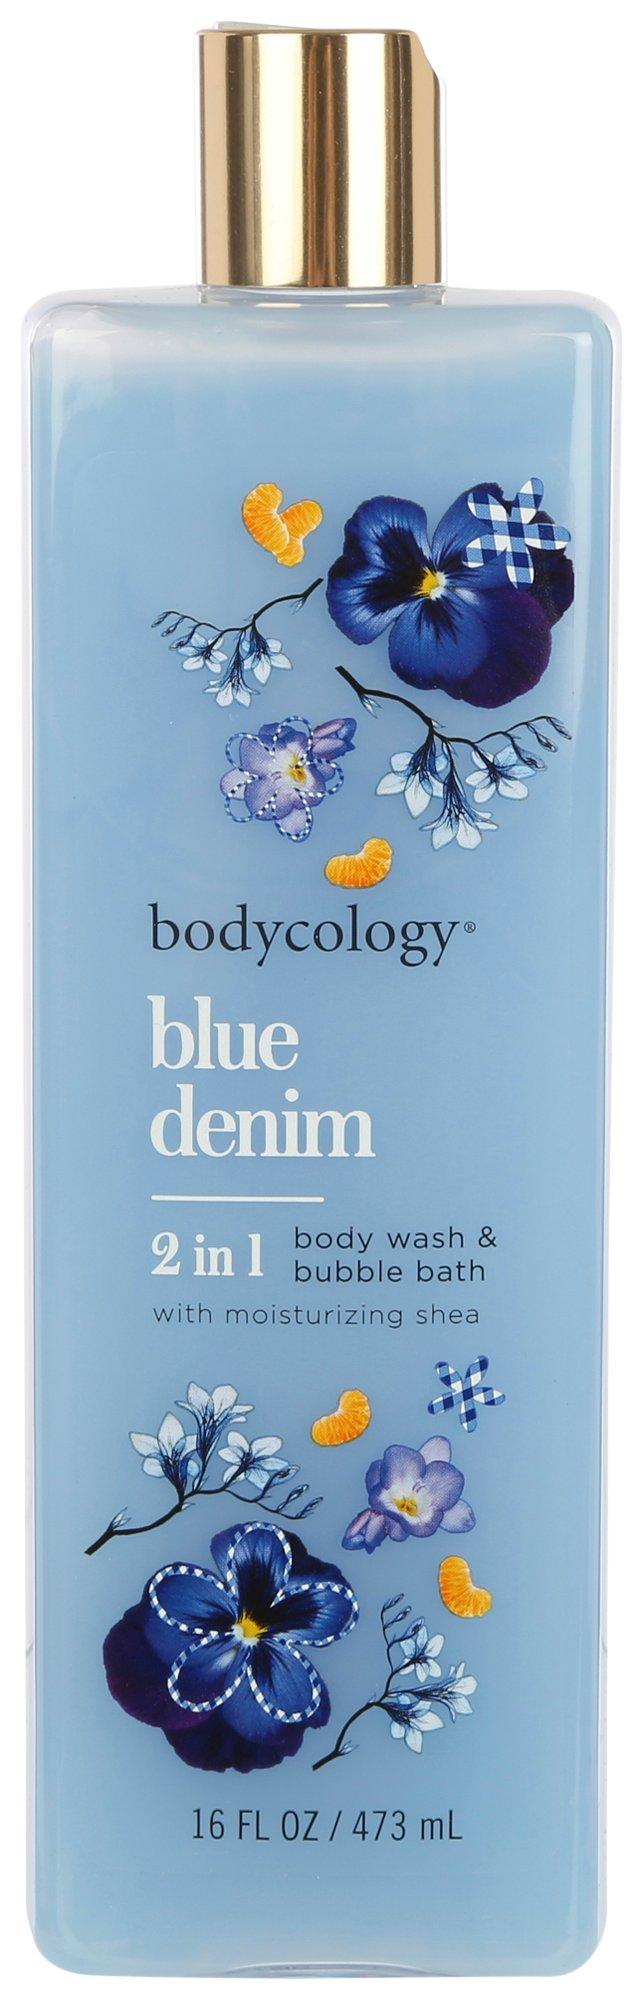 Bodycology Blue Denim Body Wash & Bubble Bath